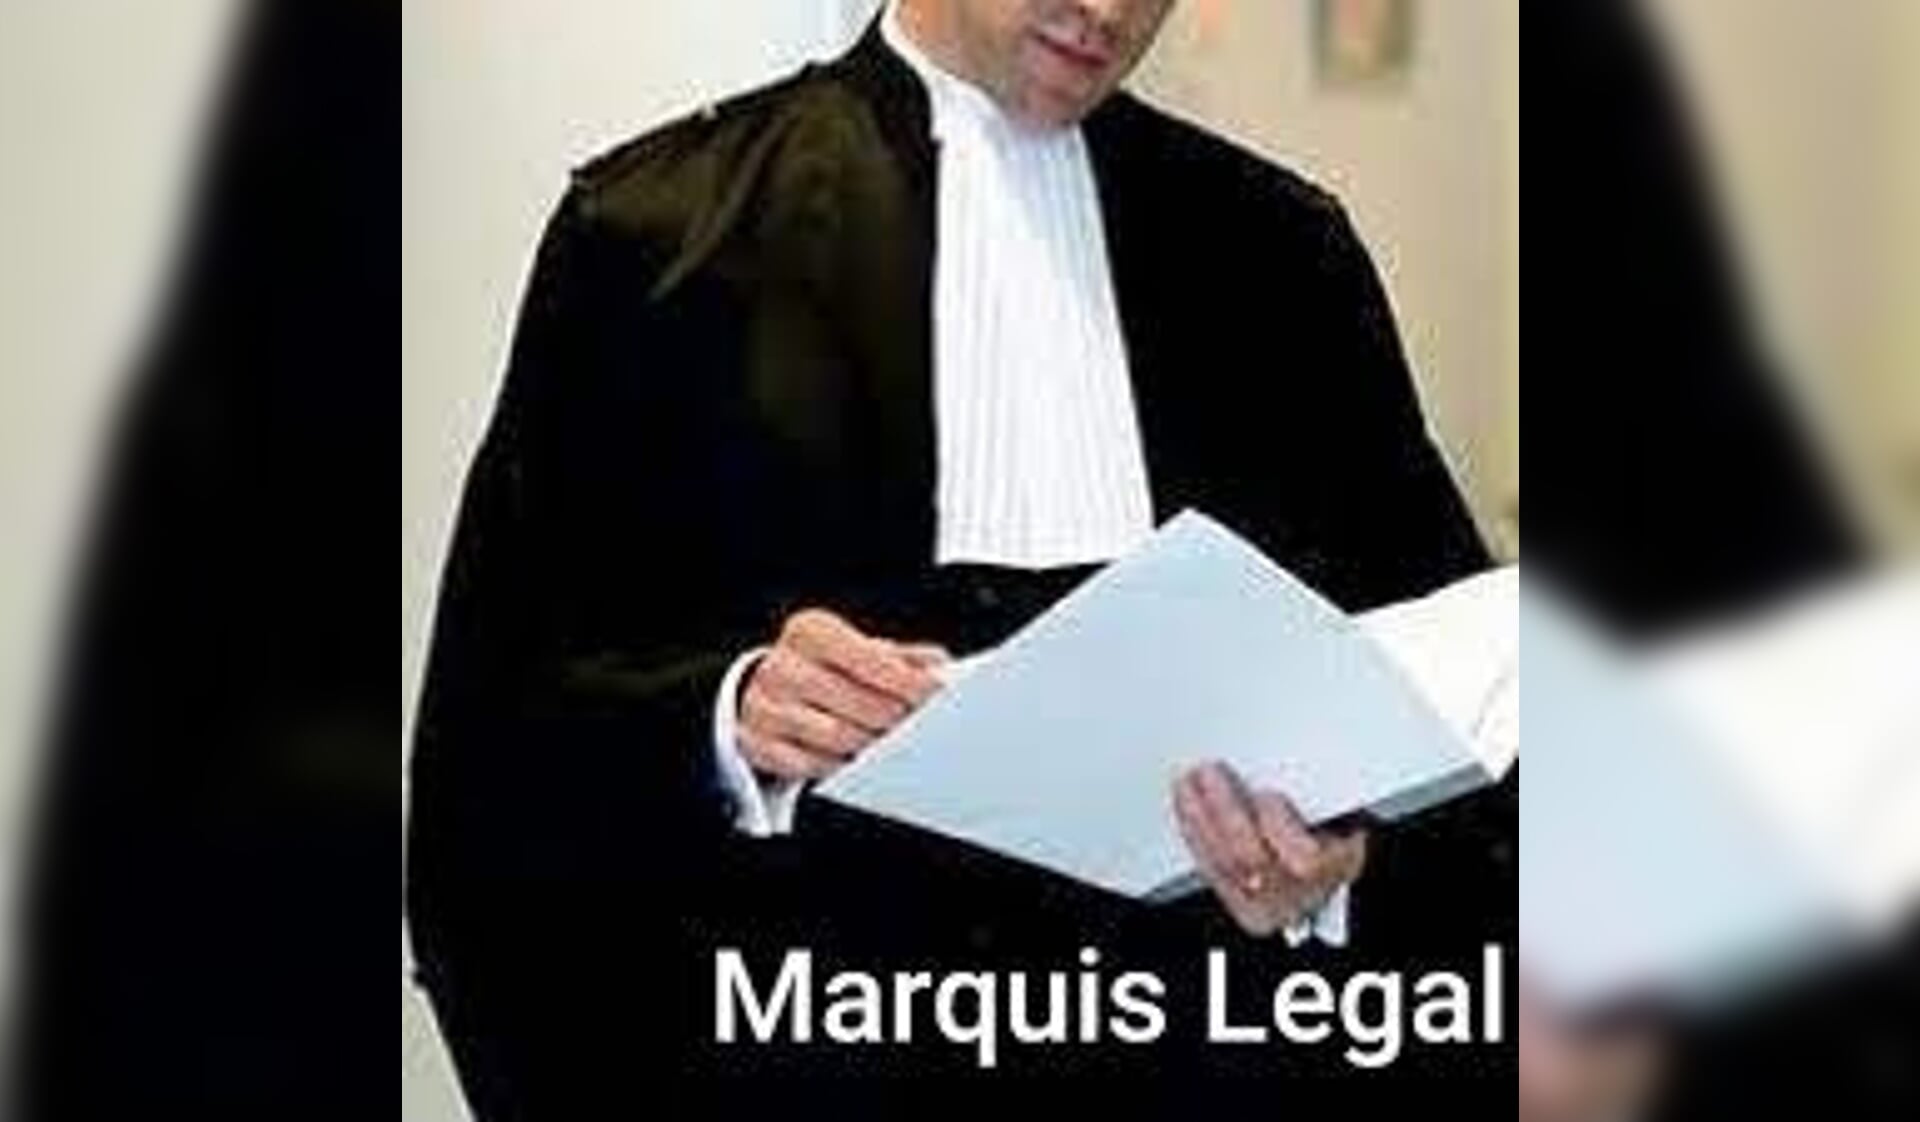 Marquis geeft gratis juridisch advies.